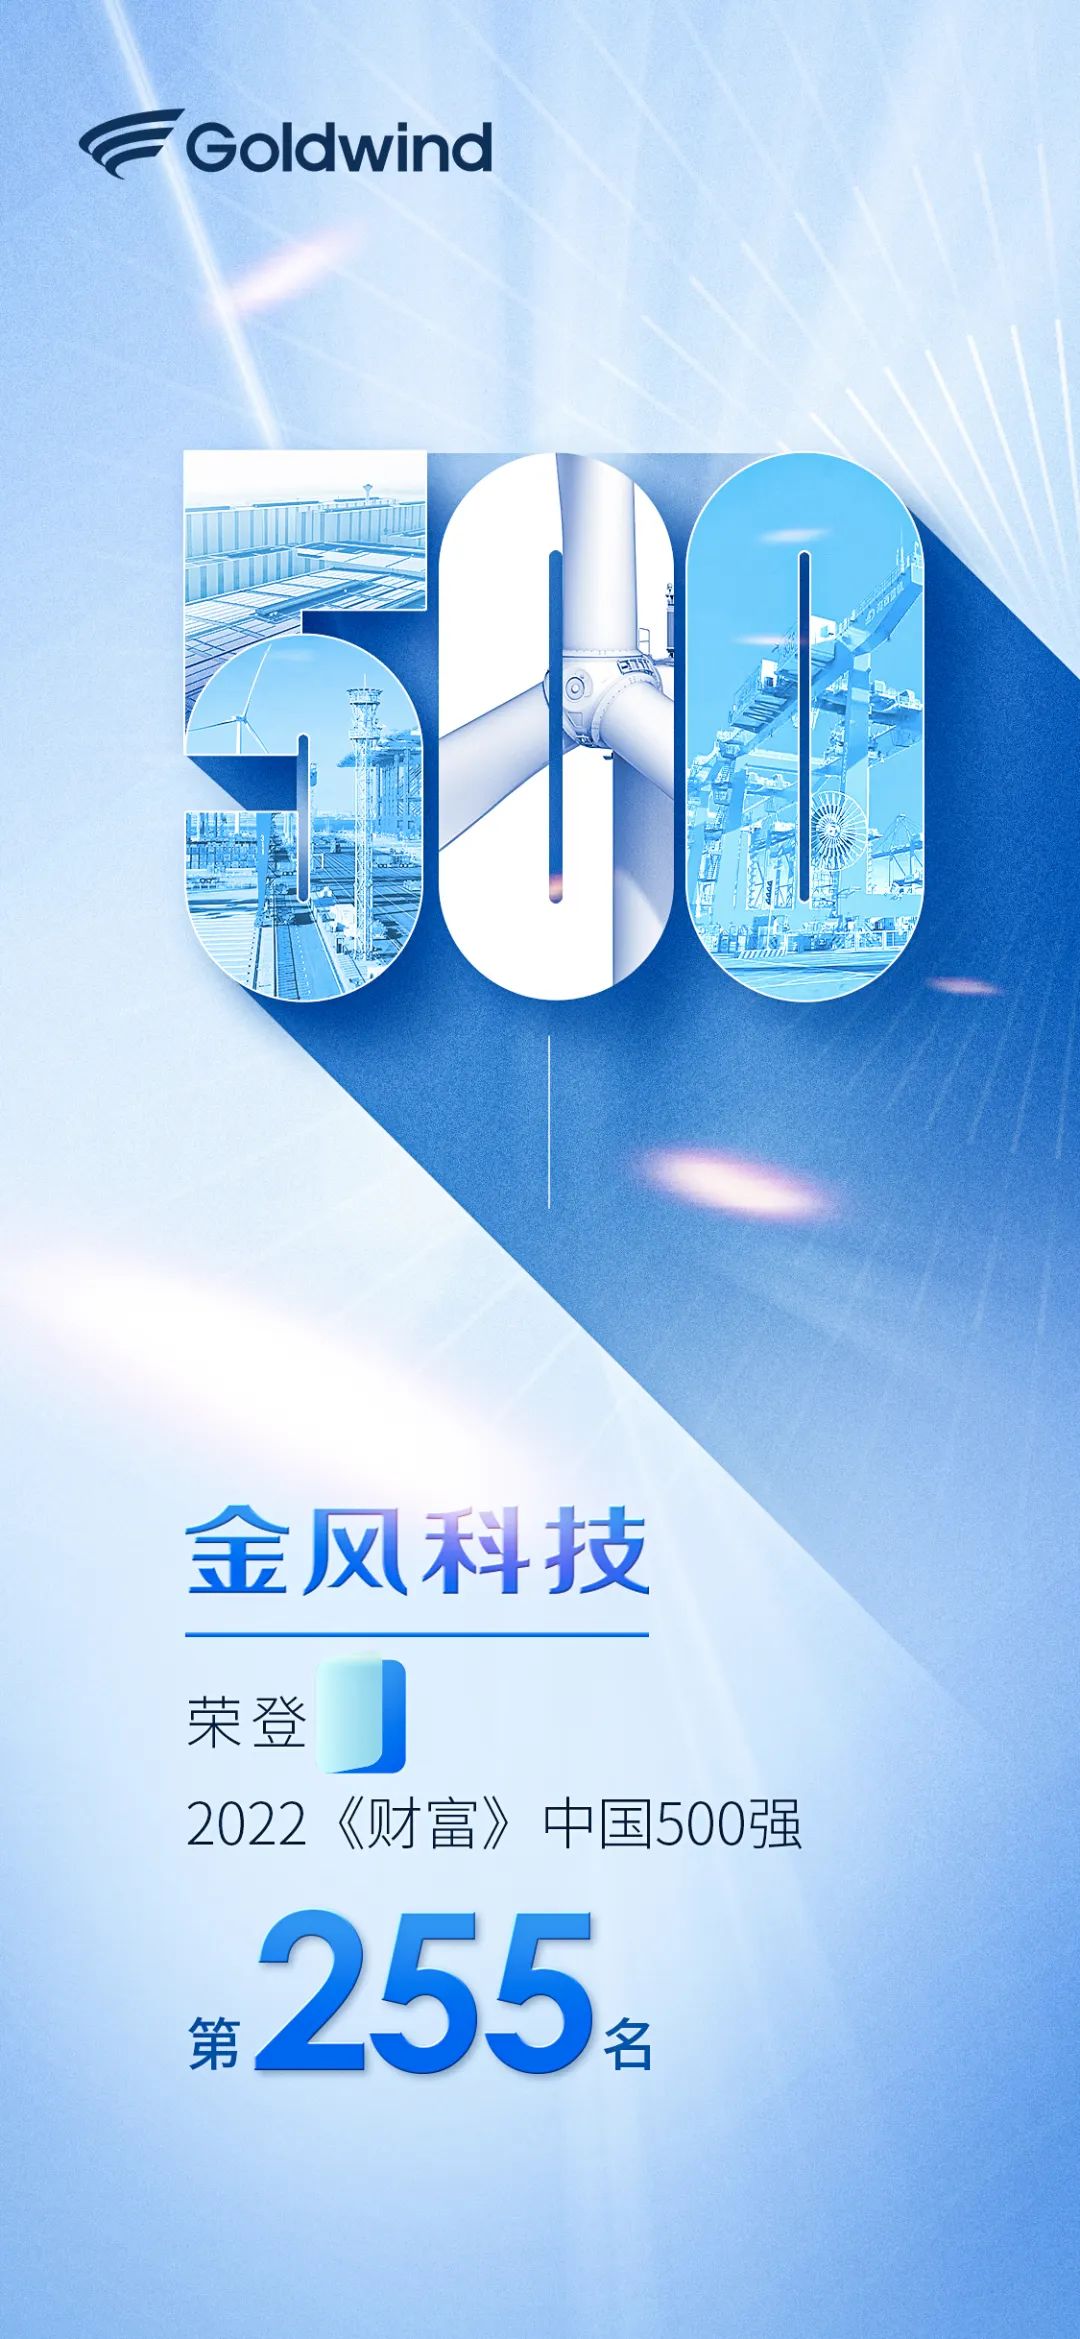 第255位！金風科技連續10年入選《財富》中國500強